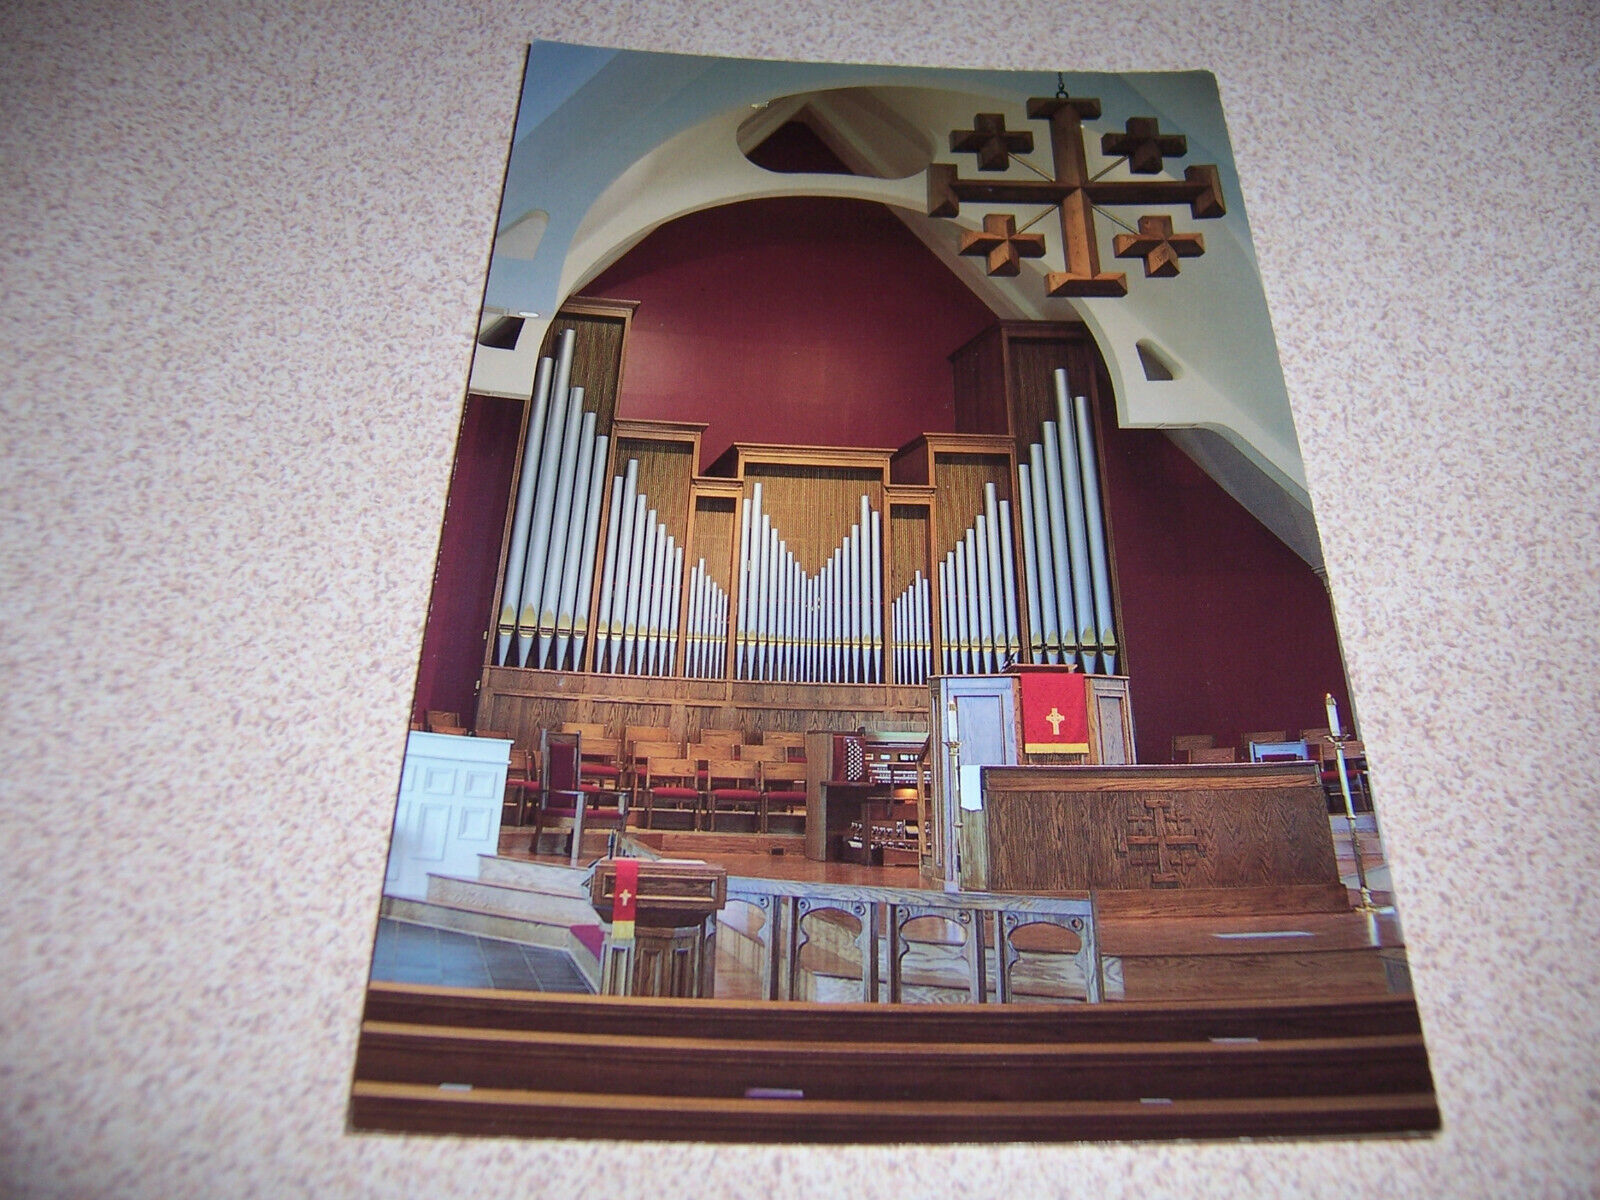 1980s INTERIOR, HERITAGE UNITED METHODIST CHURCH, LEESBURG, VA. VTG POSTCARD